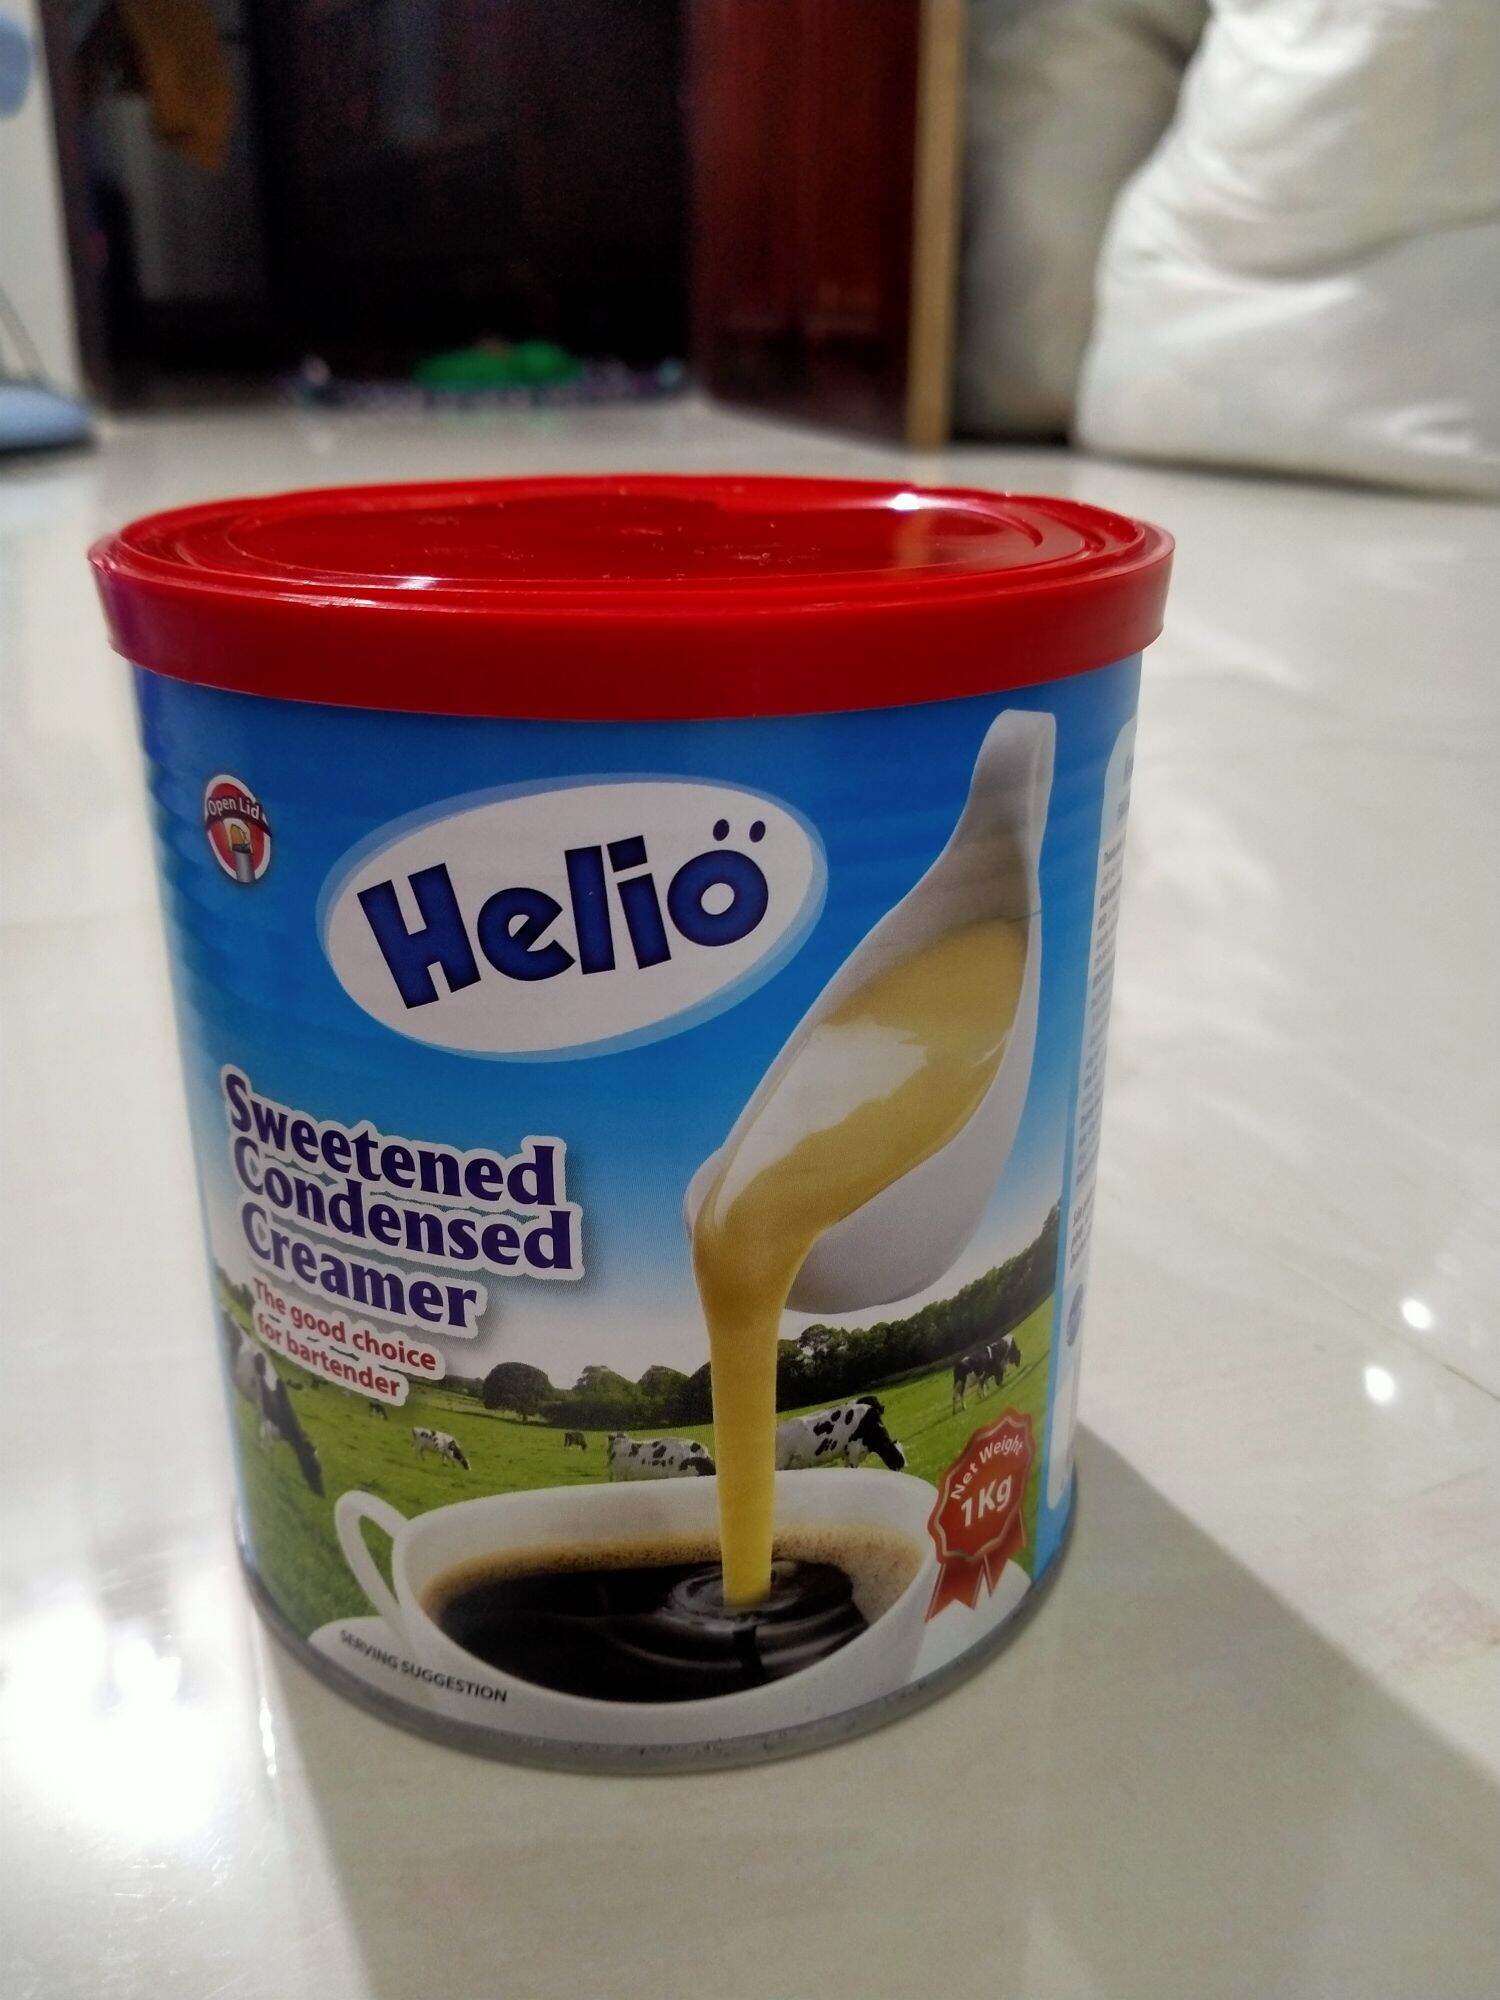 Sữa đặc 1kg có đường Helio sản xuất theo tiêu chuẩn Đức Sweetened Condensed Creamer thumbnail